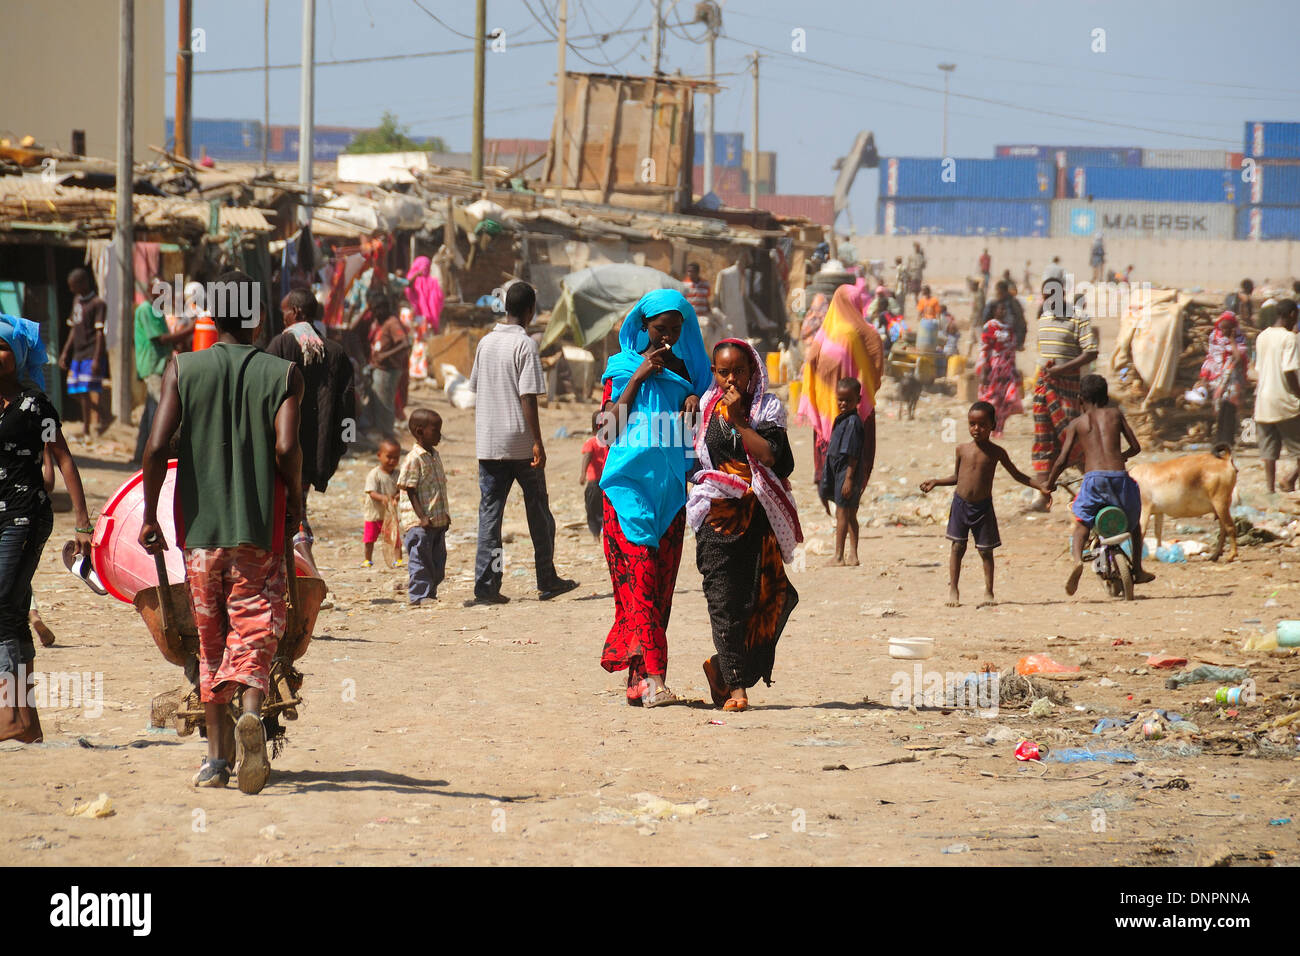 Les Djiboutiens de marcher dans une rue de Balbala district près de la ville de Djibouti, Djibouti, Corne de l'Afrique Banque D'Images